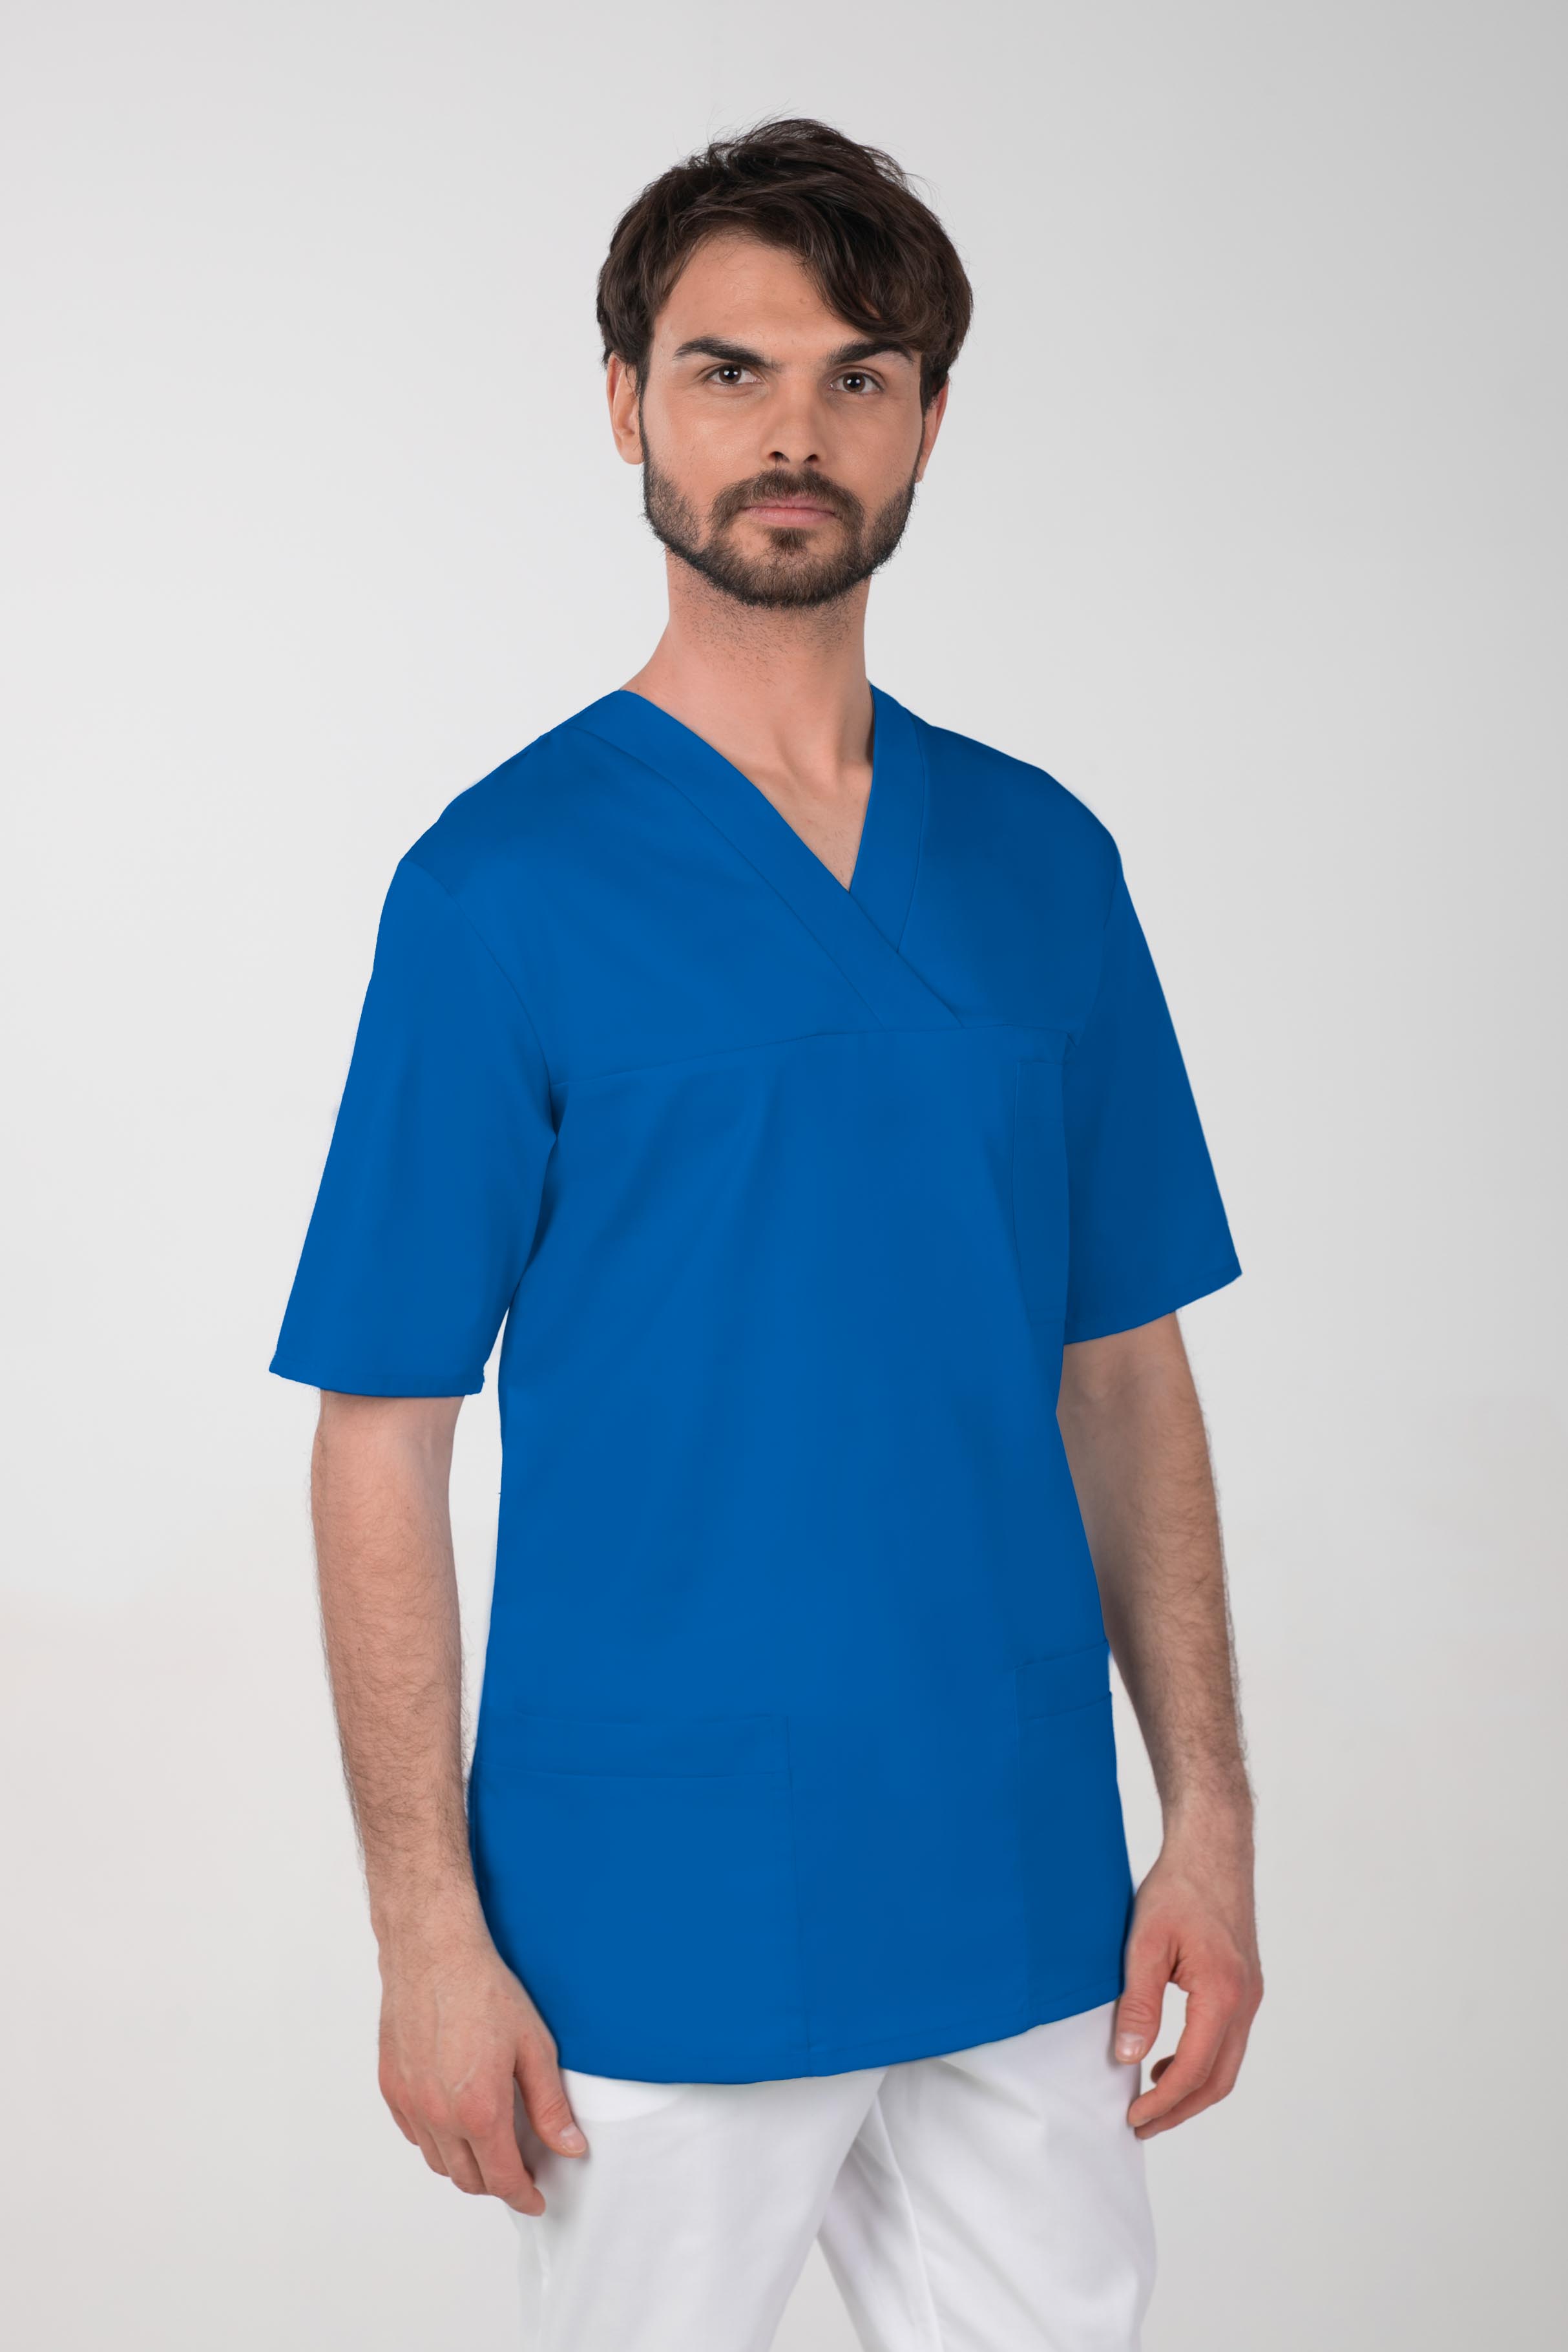 Pánská barevná zdravotnická košile M-074C, modrá